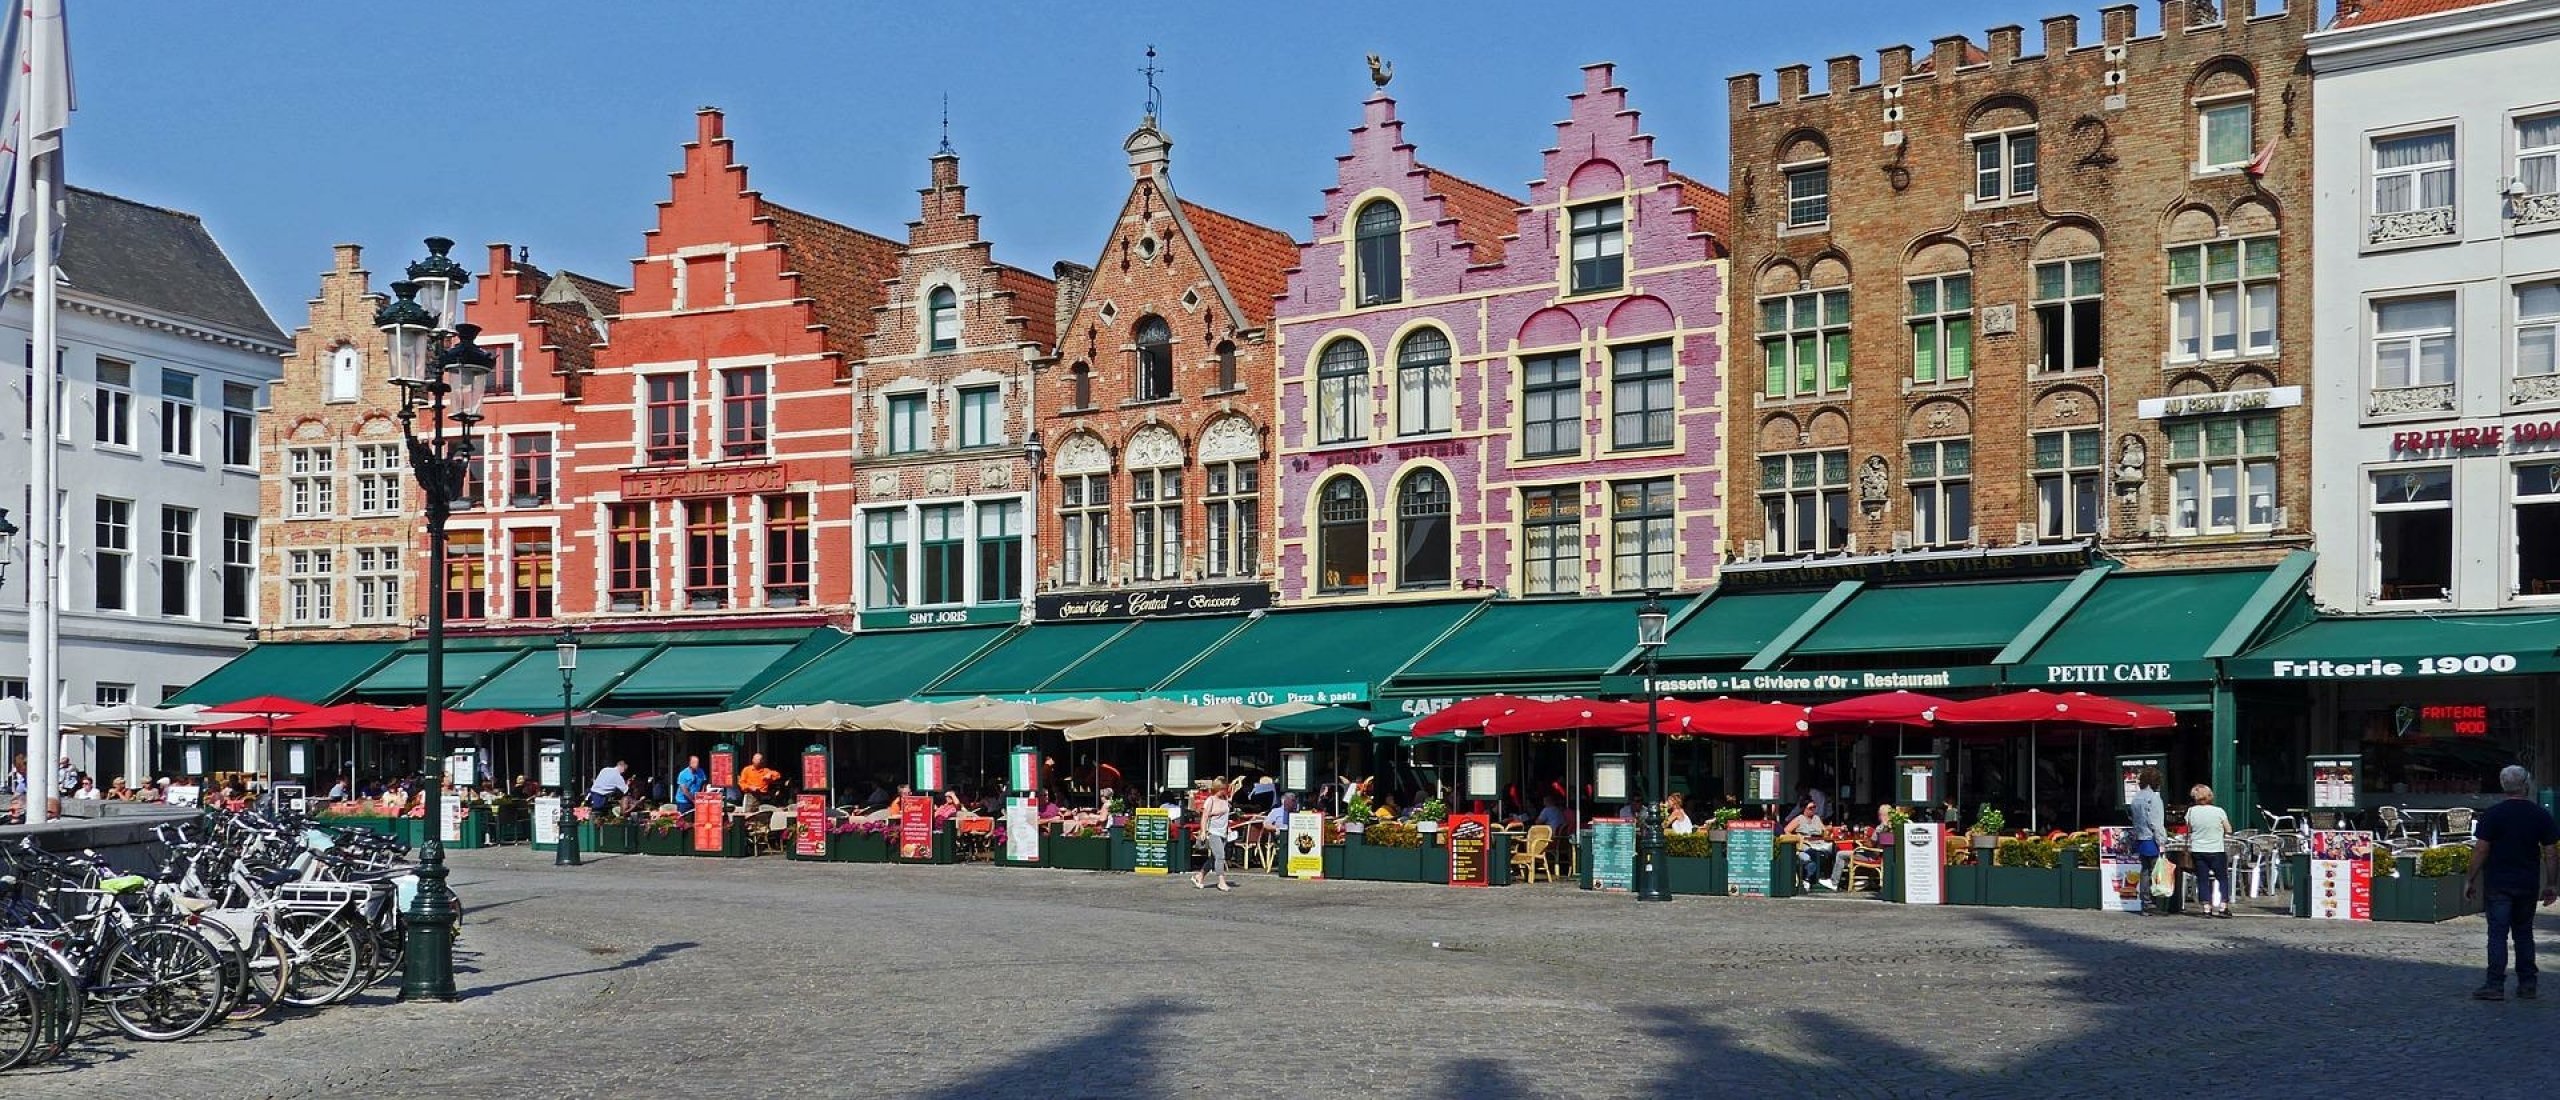 Stedentrip Brugge - aanbiedingen, persoonlijke tips, verhalen en meer...